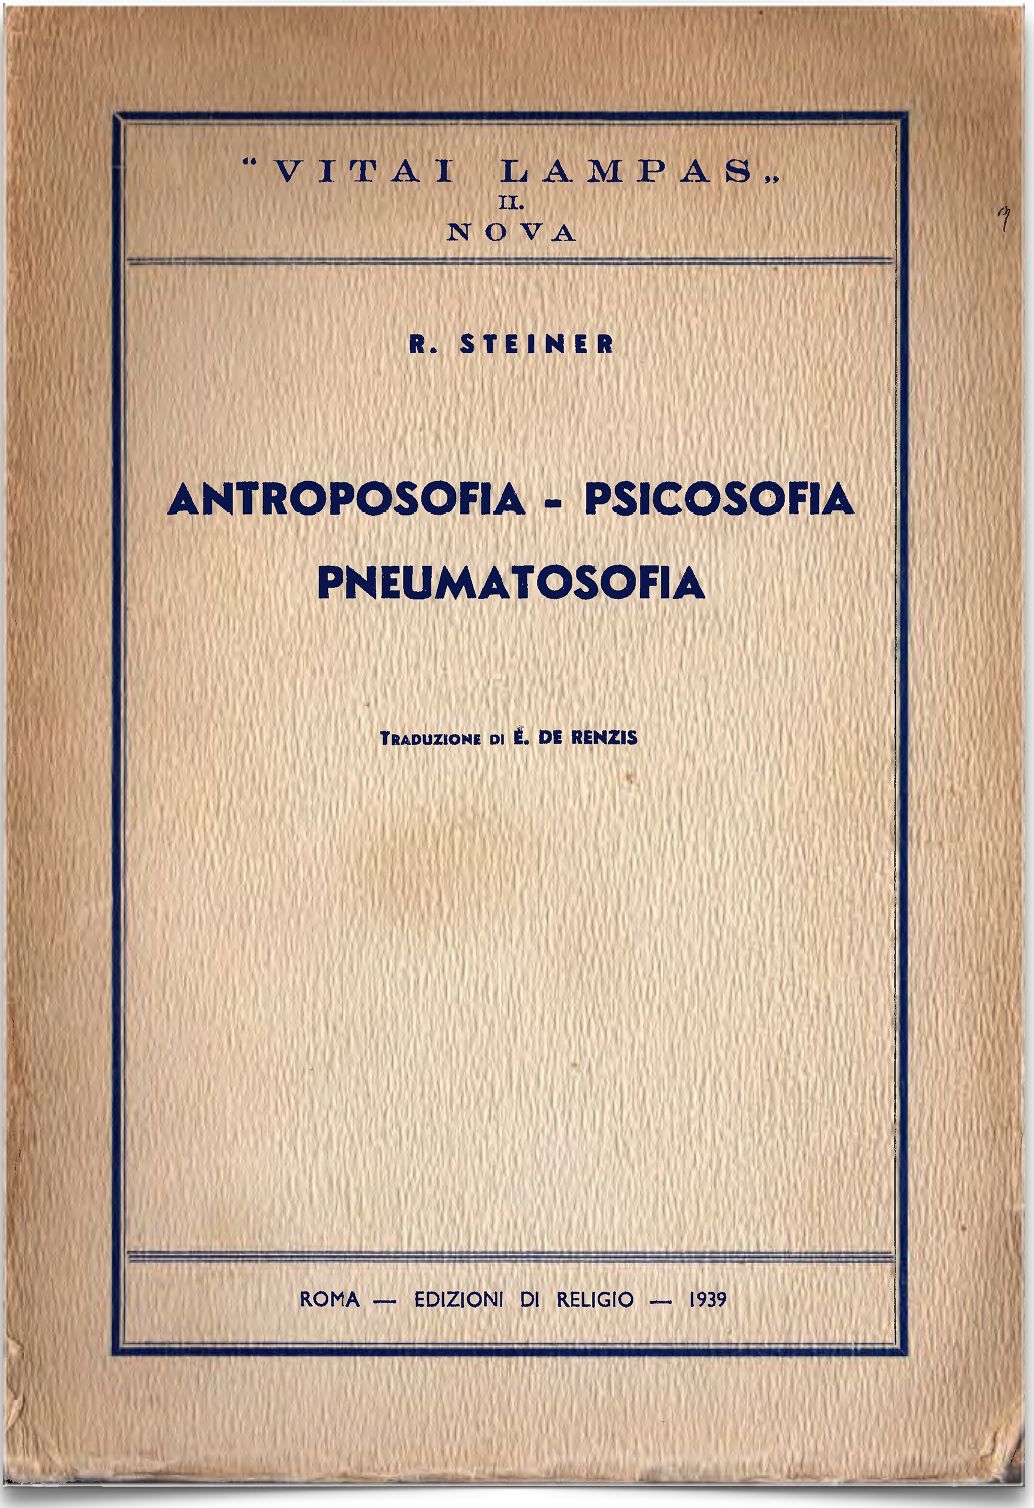 Antroposofia-psicosofia-pneumatosofia - o.o. 115 (Rudolf Steiner) - copertina originale